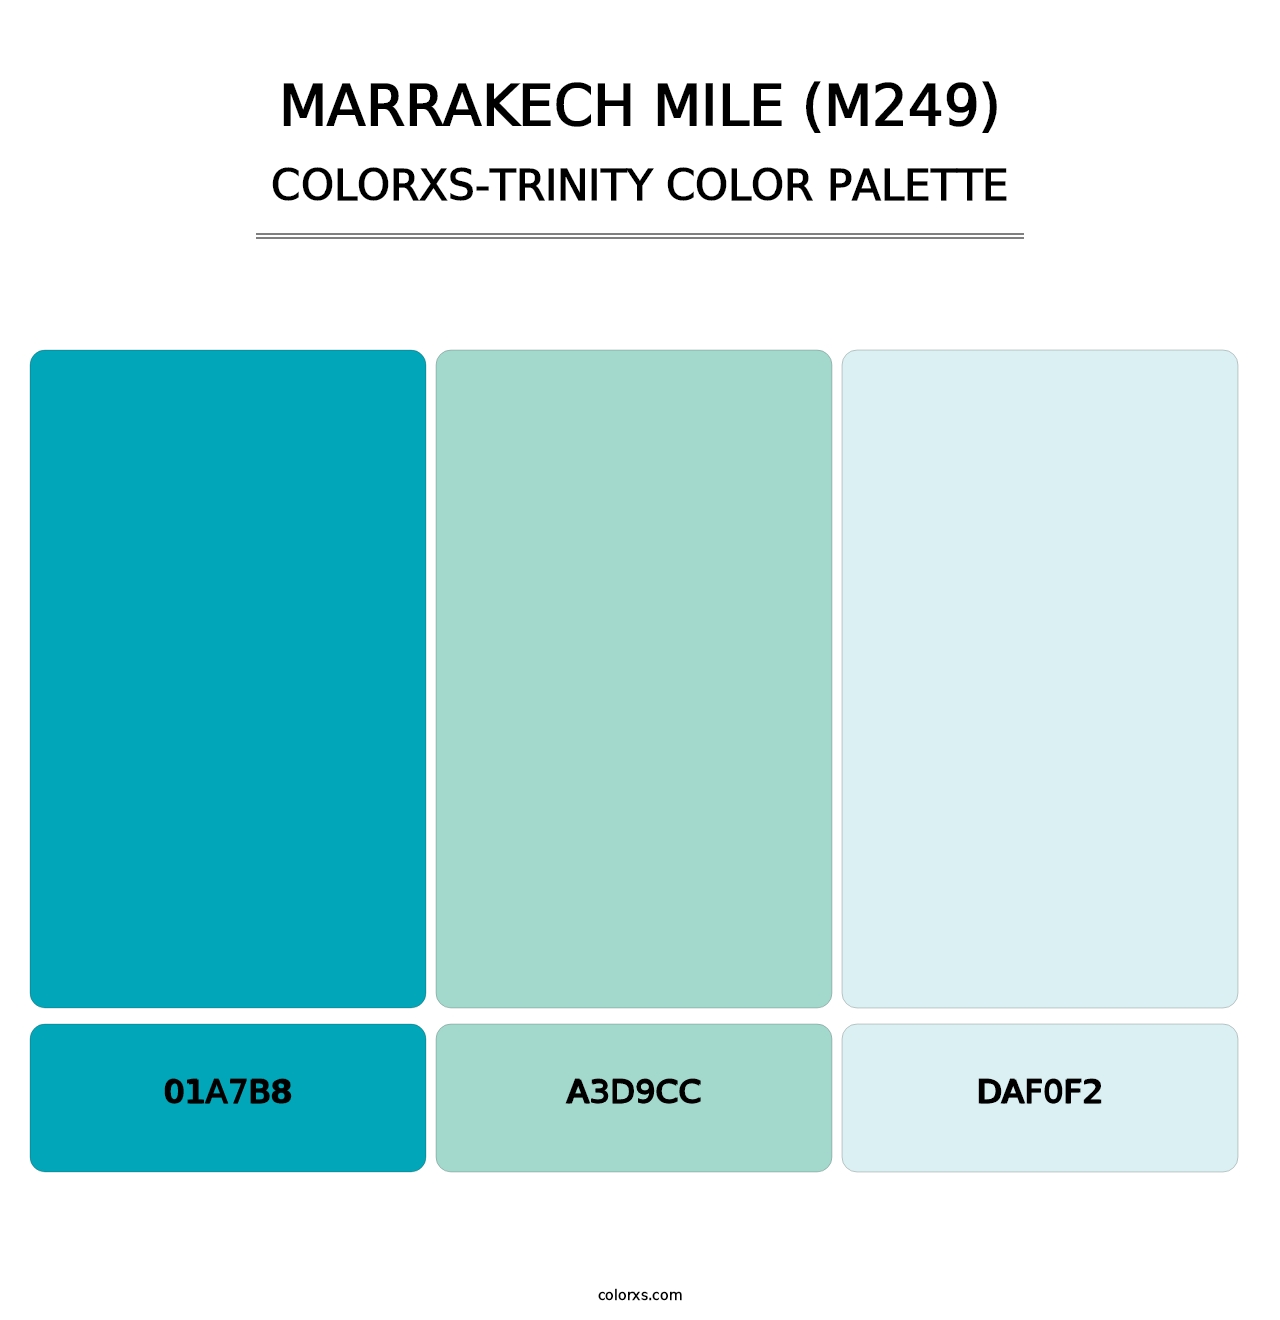 Marrakech Mile (M249) - Colorxs Trinity Palette